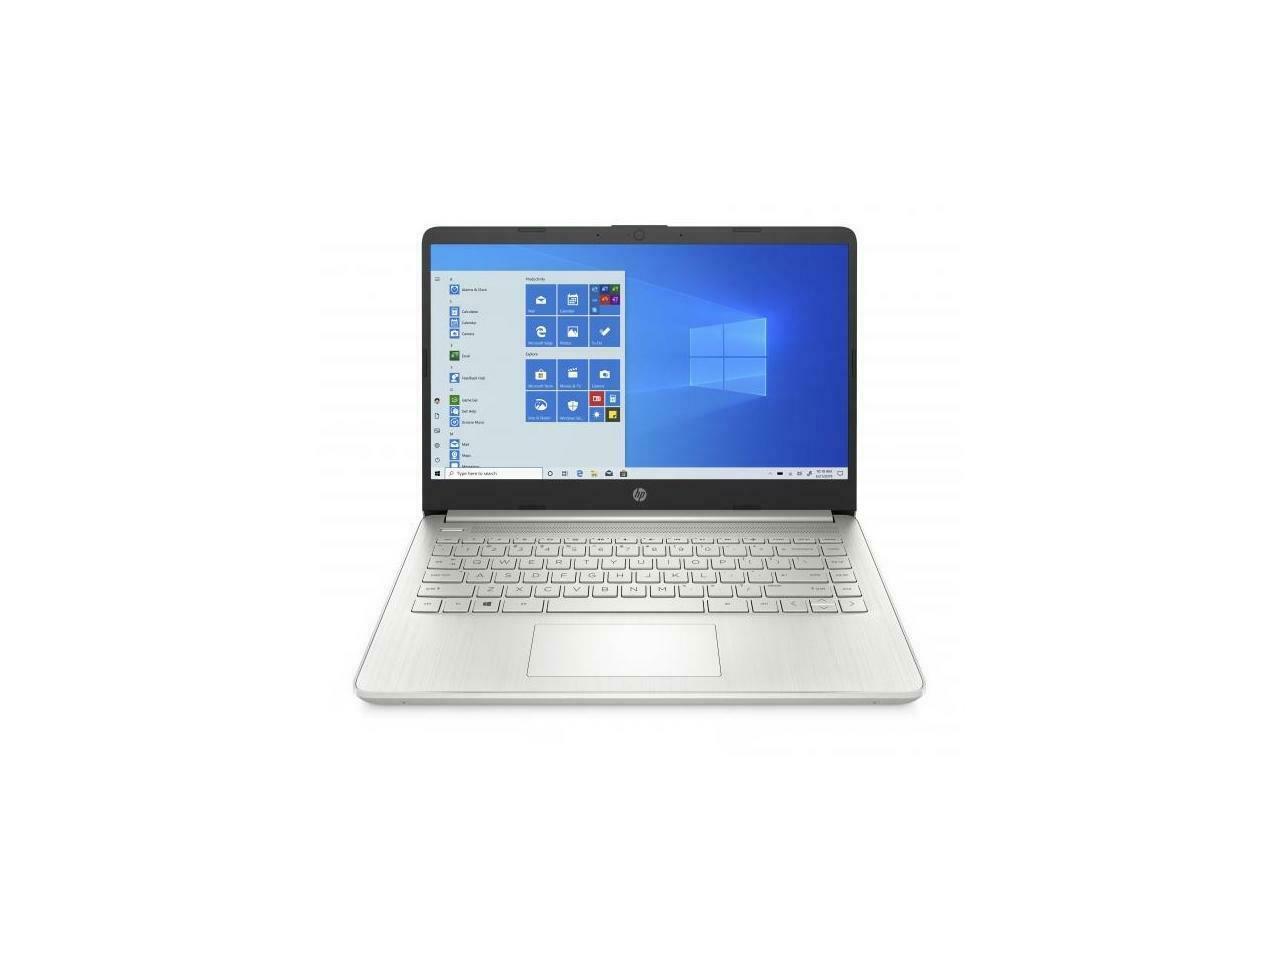 HP Laptop 14 inch - fq0008ca - AMD 3020e - 4 GB RAM - 64 GB HDD